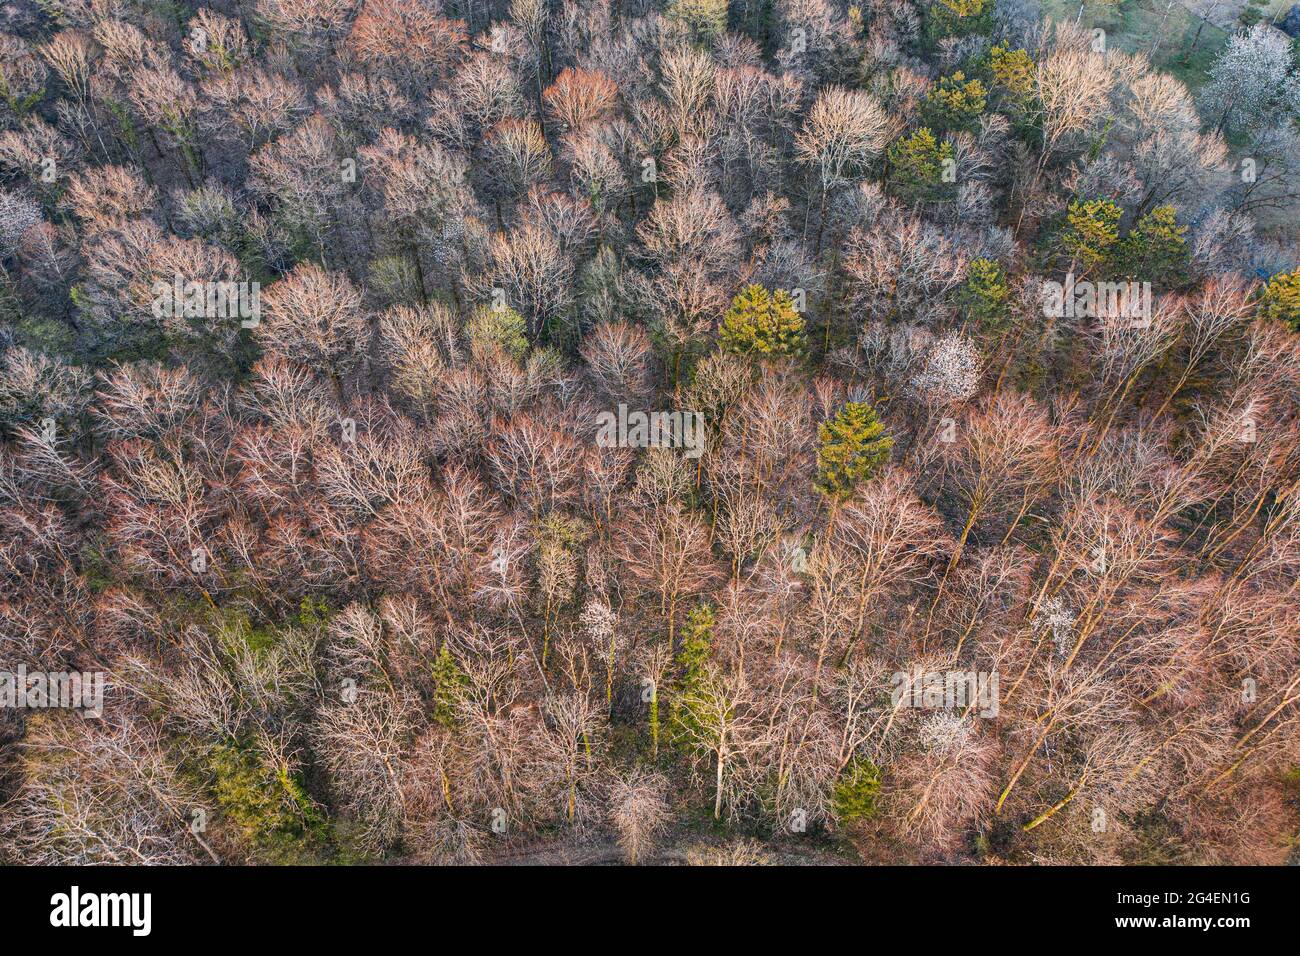 Vista superior del bosque de árboles caducifolios a principios de primavera Foto de stock